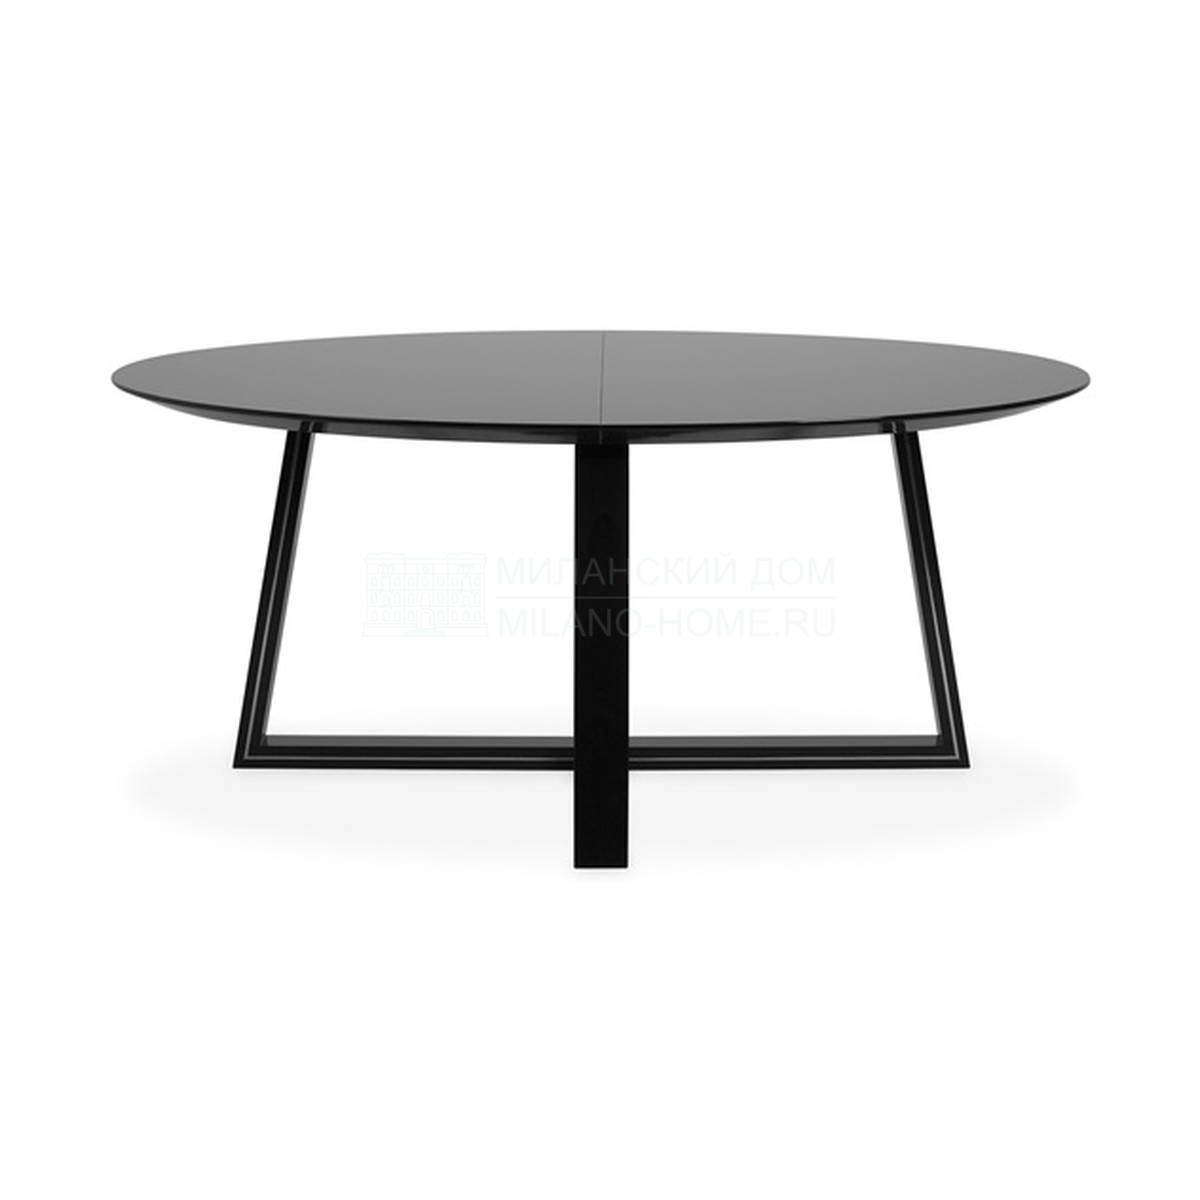 Обеденный стол Talis round dining table из Великобритании фабрики THE SOFA & CHAIR Company